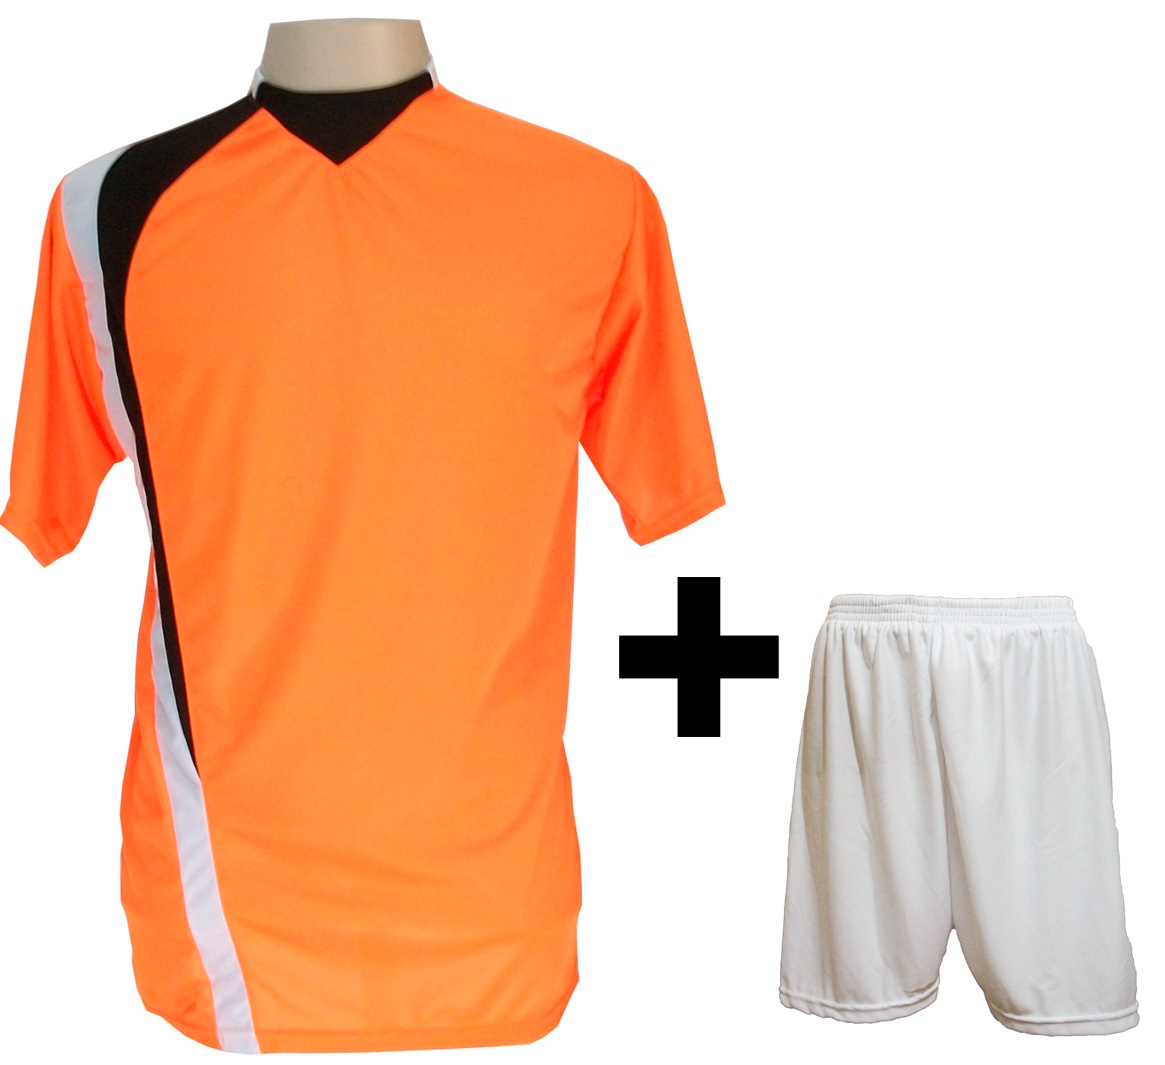 Uniforme Esportivo com 14 camisas modelo PSG Laranja/Preto/Branco + 14 calções modelo Madrid + 1 Goleiro + Brindes